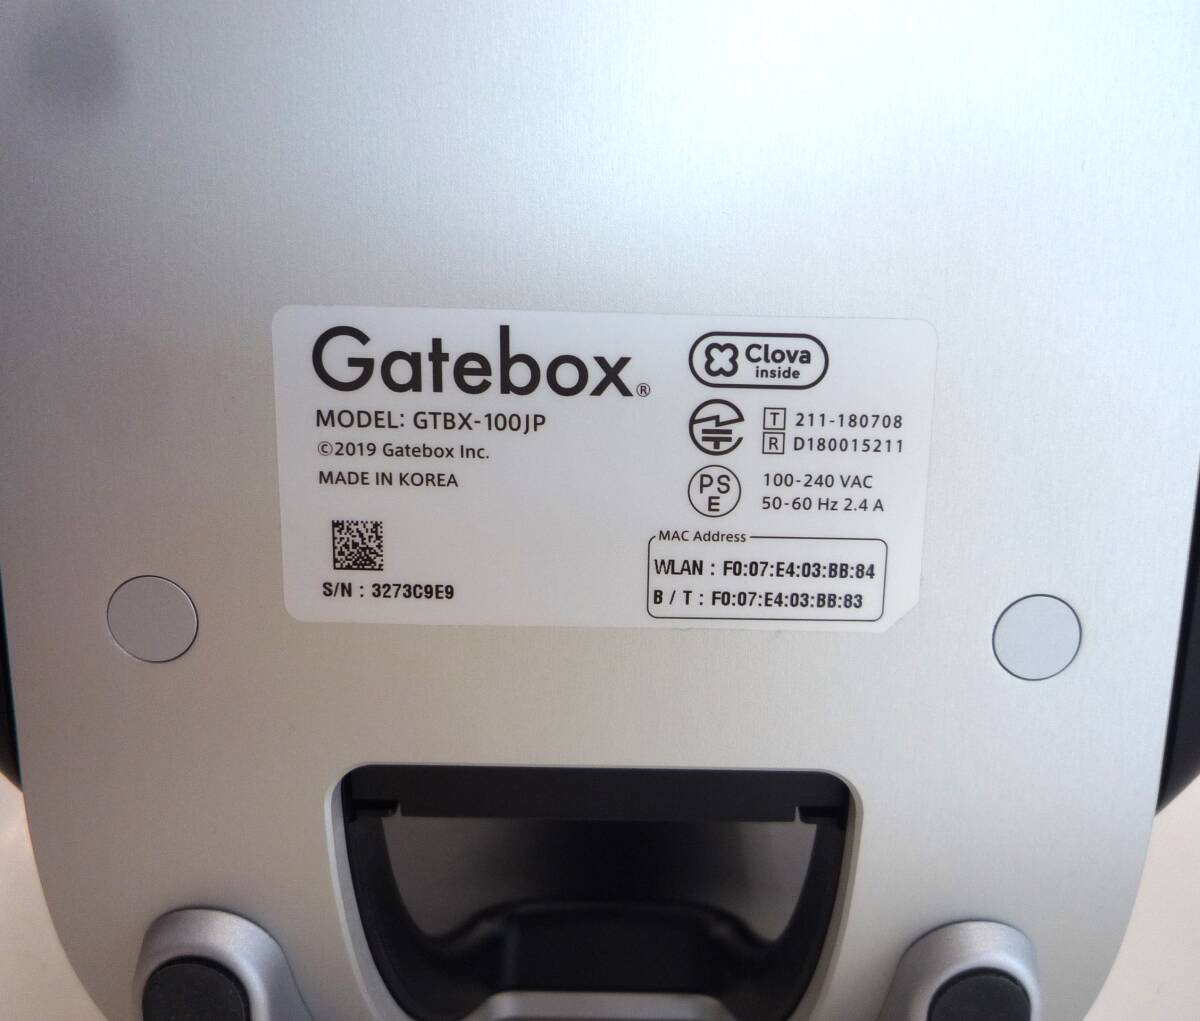 [ б/у товар ] [ первый период пуск подтверждено ] Gatebox GTBX-100jp герой .. оборудование включение в покупку не возможно 